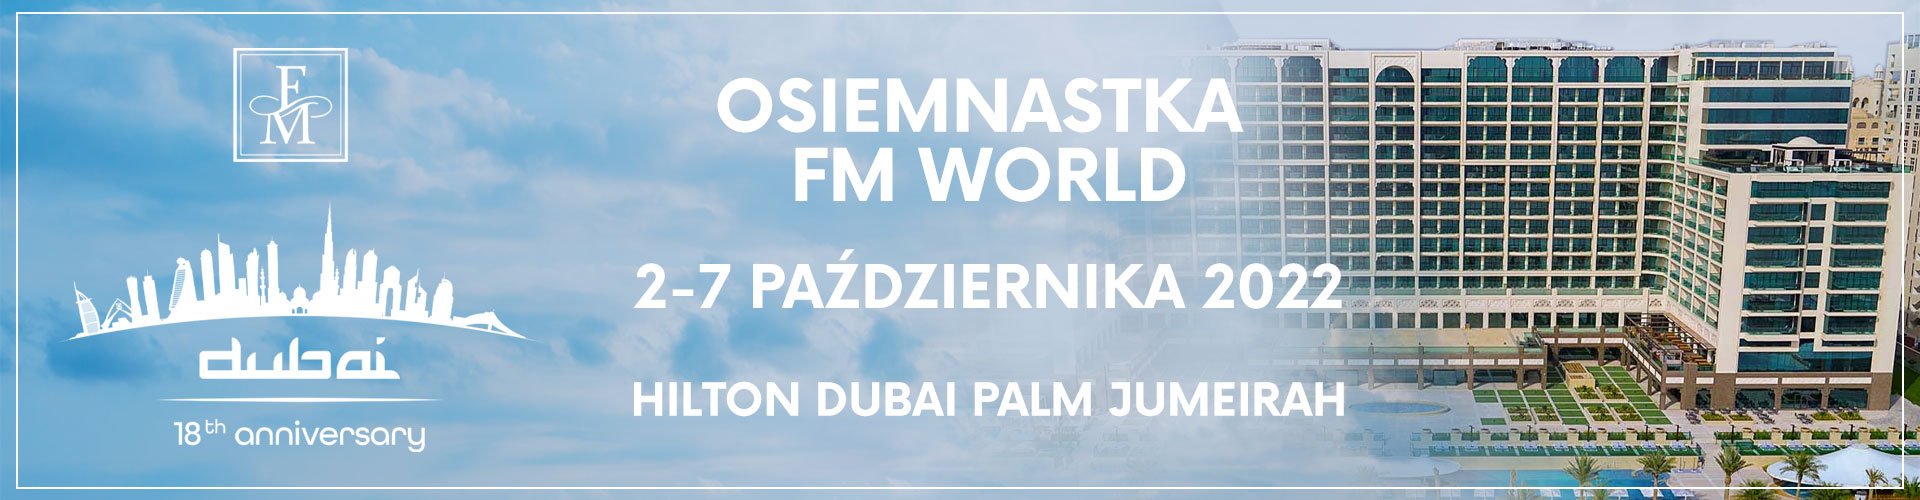 HILTON UGOŚCI FM WORLD 